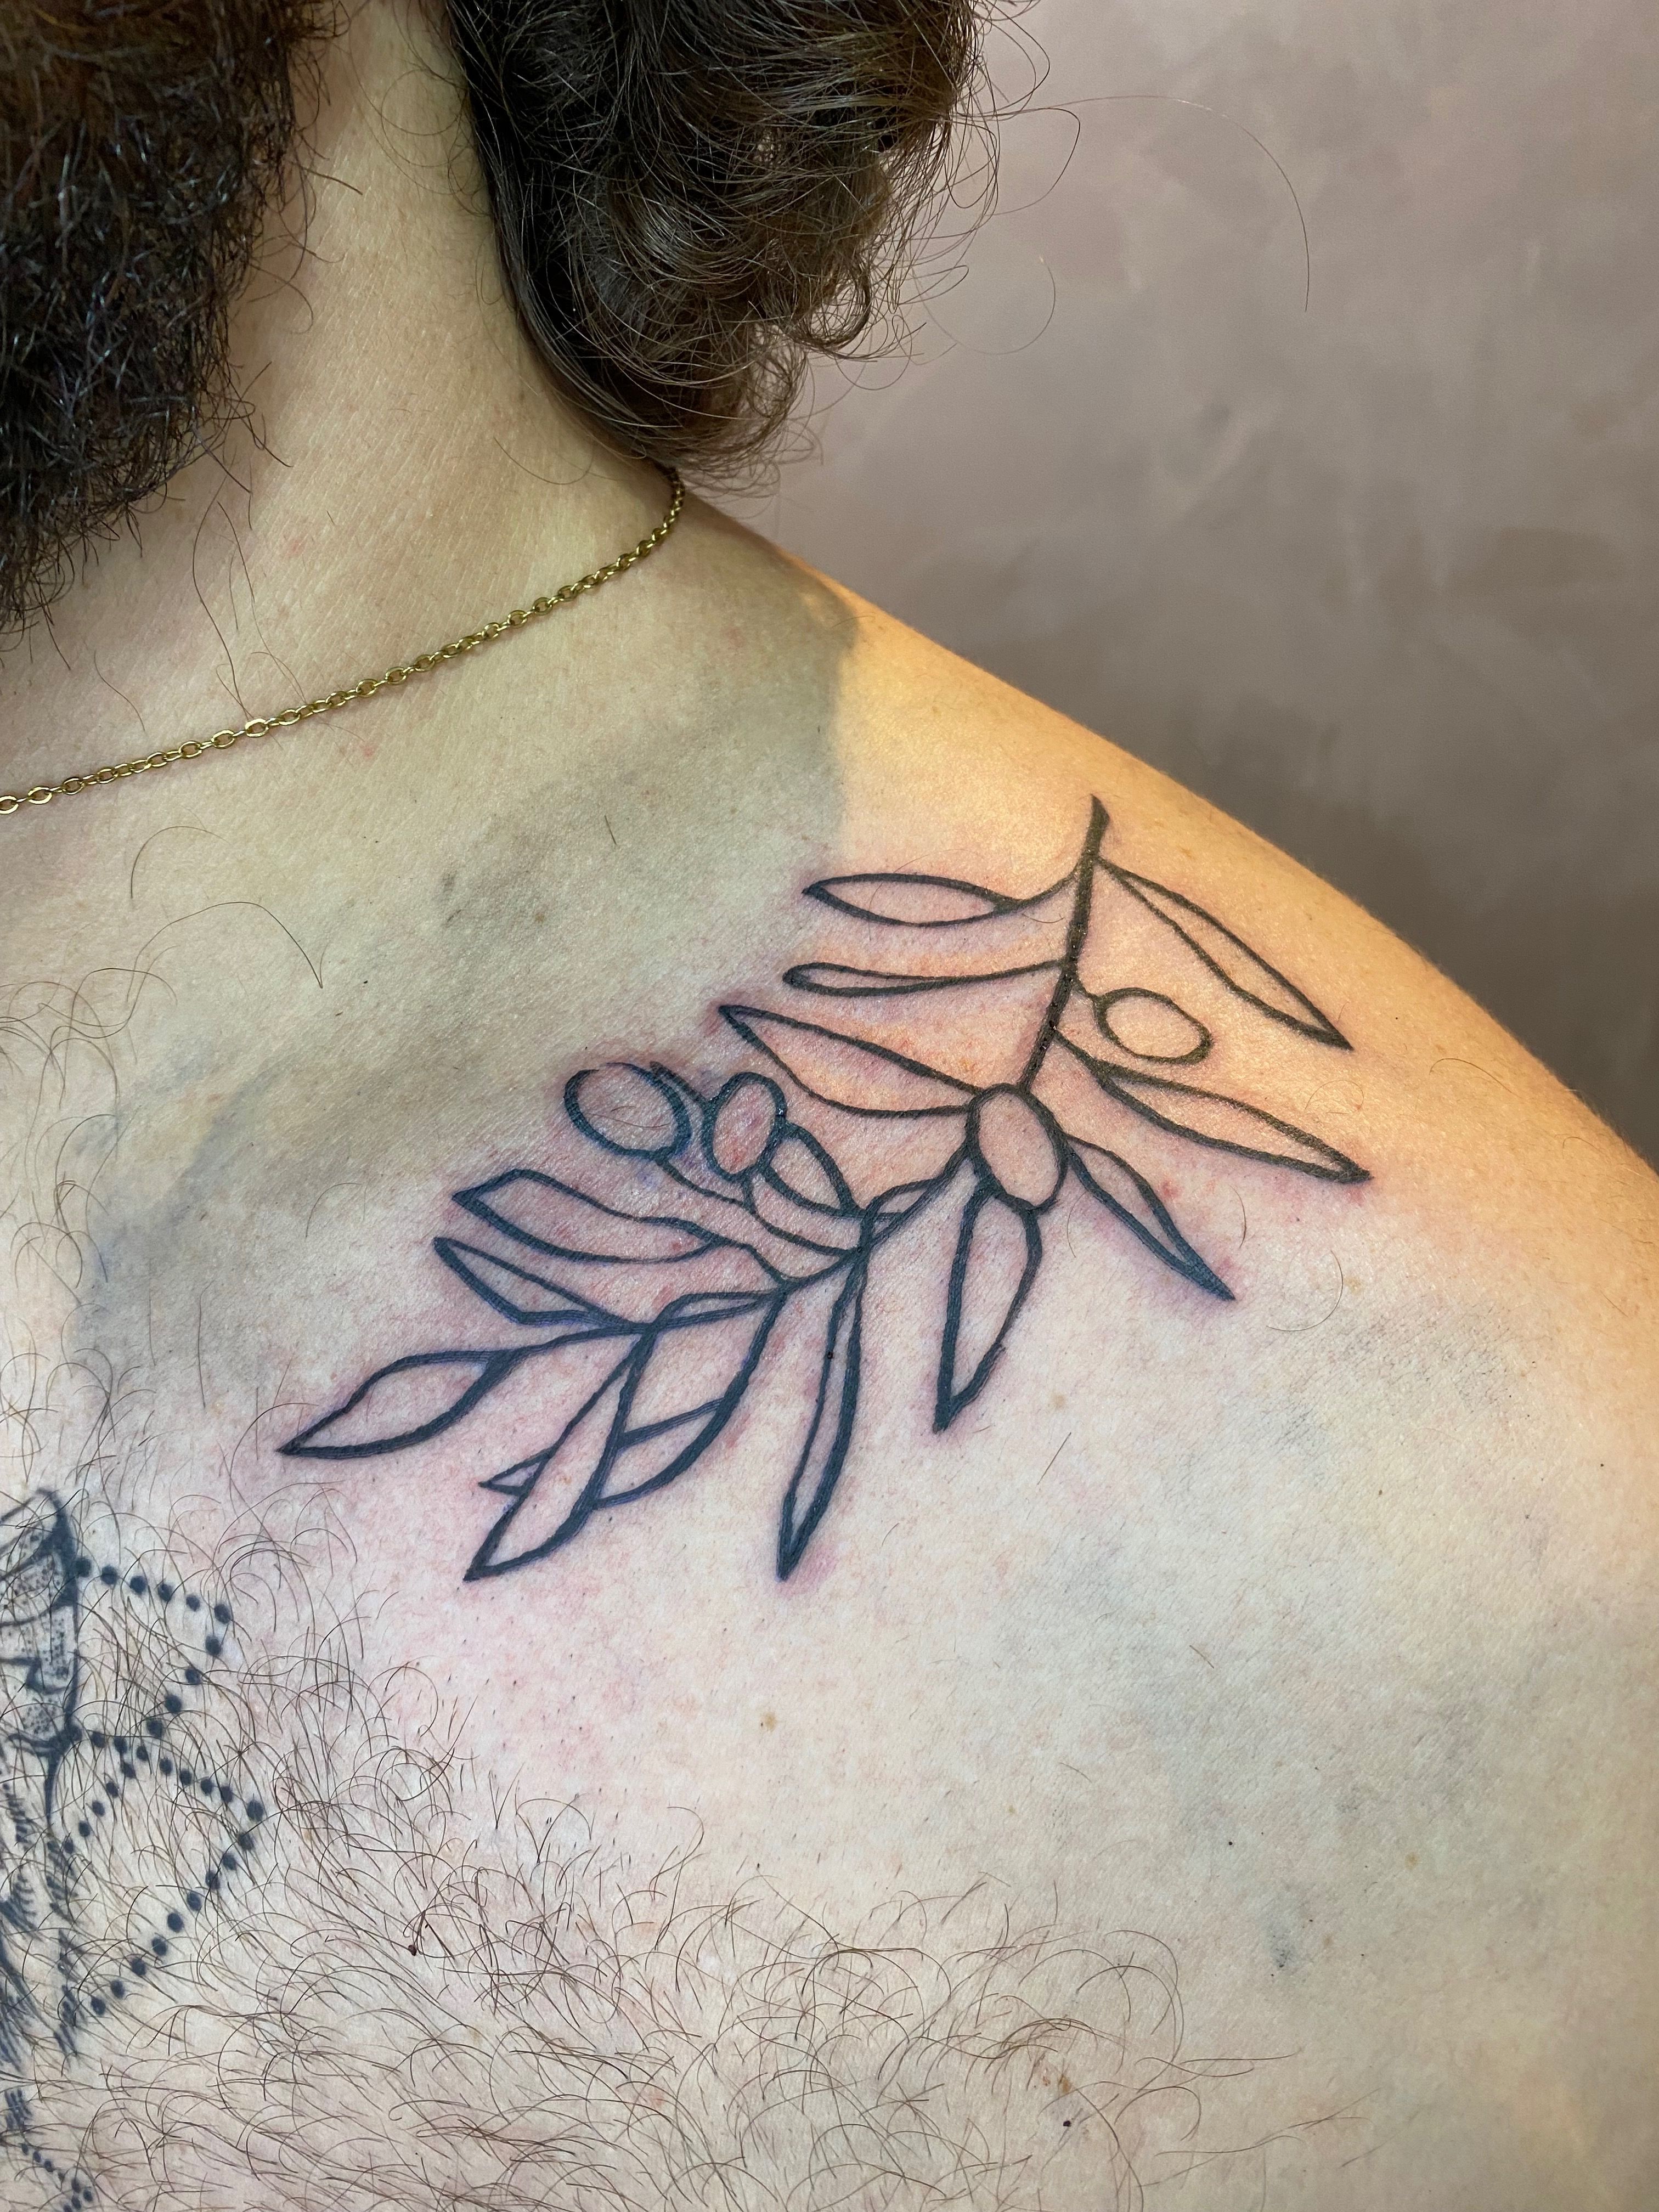 Branch Tattoo - Best Tattoo Ideas Gallery